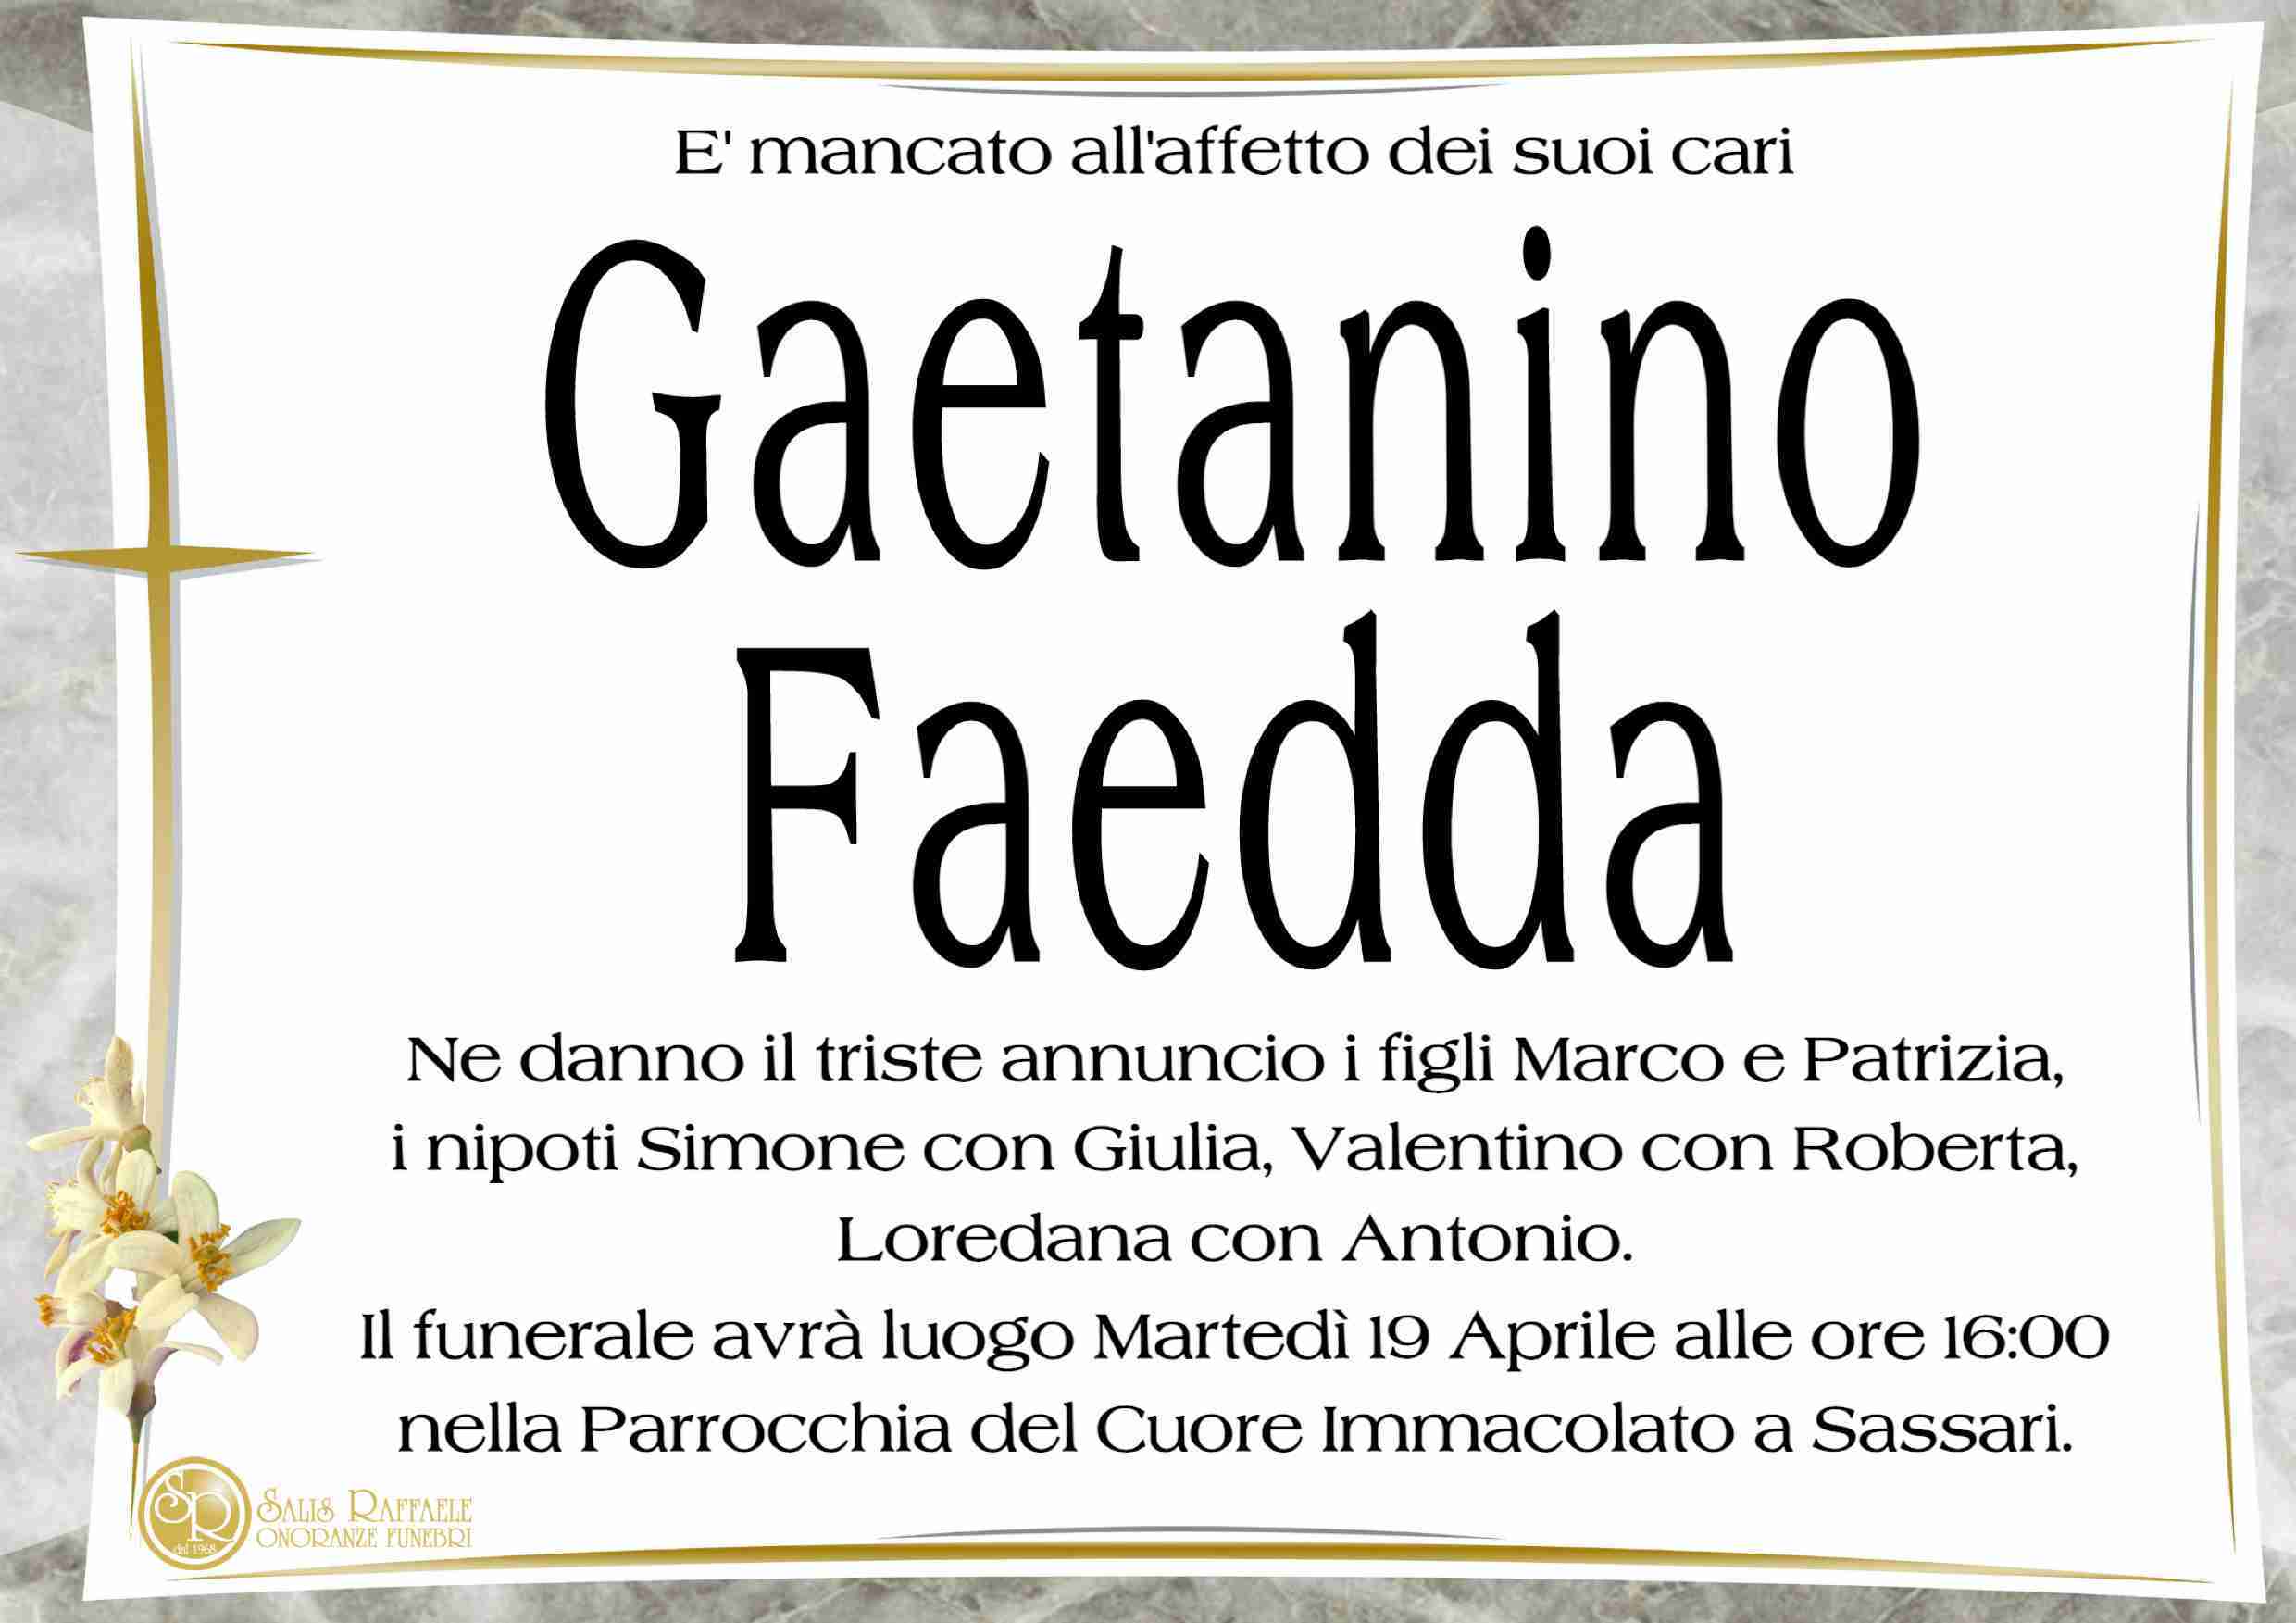 Gaetanino Faedda